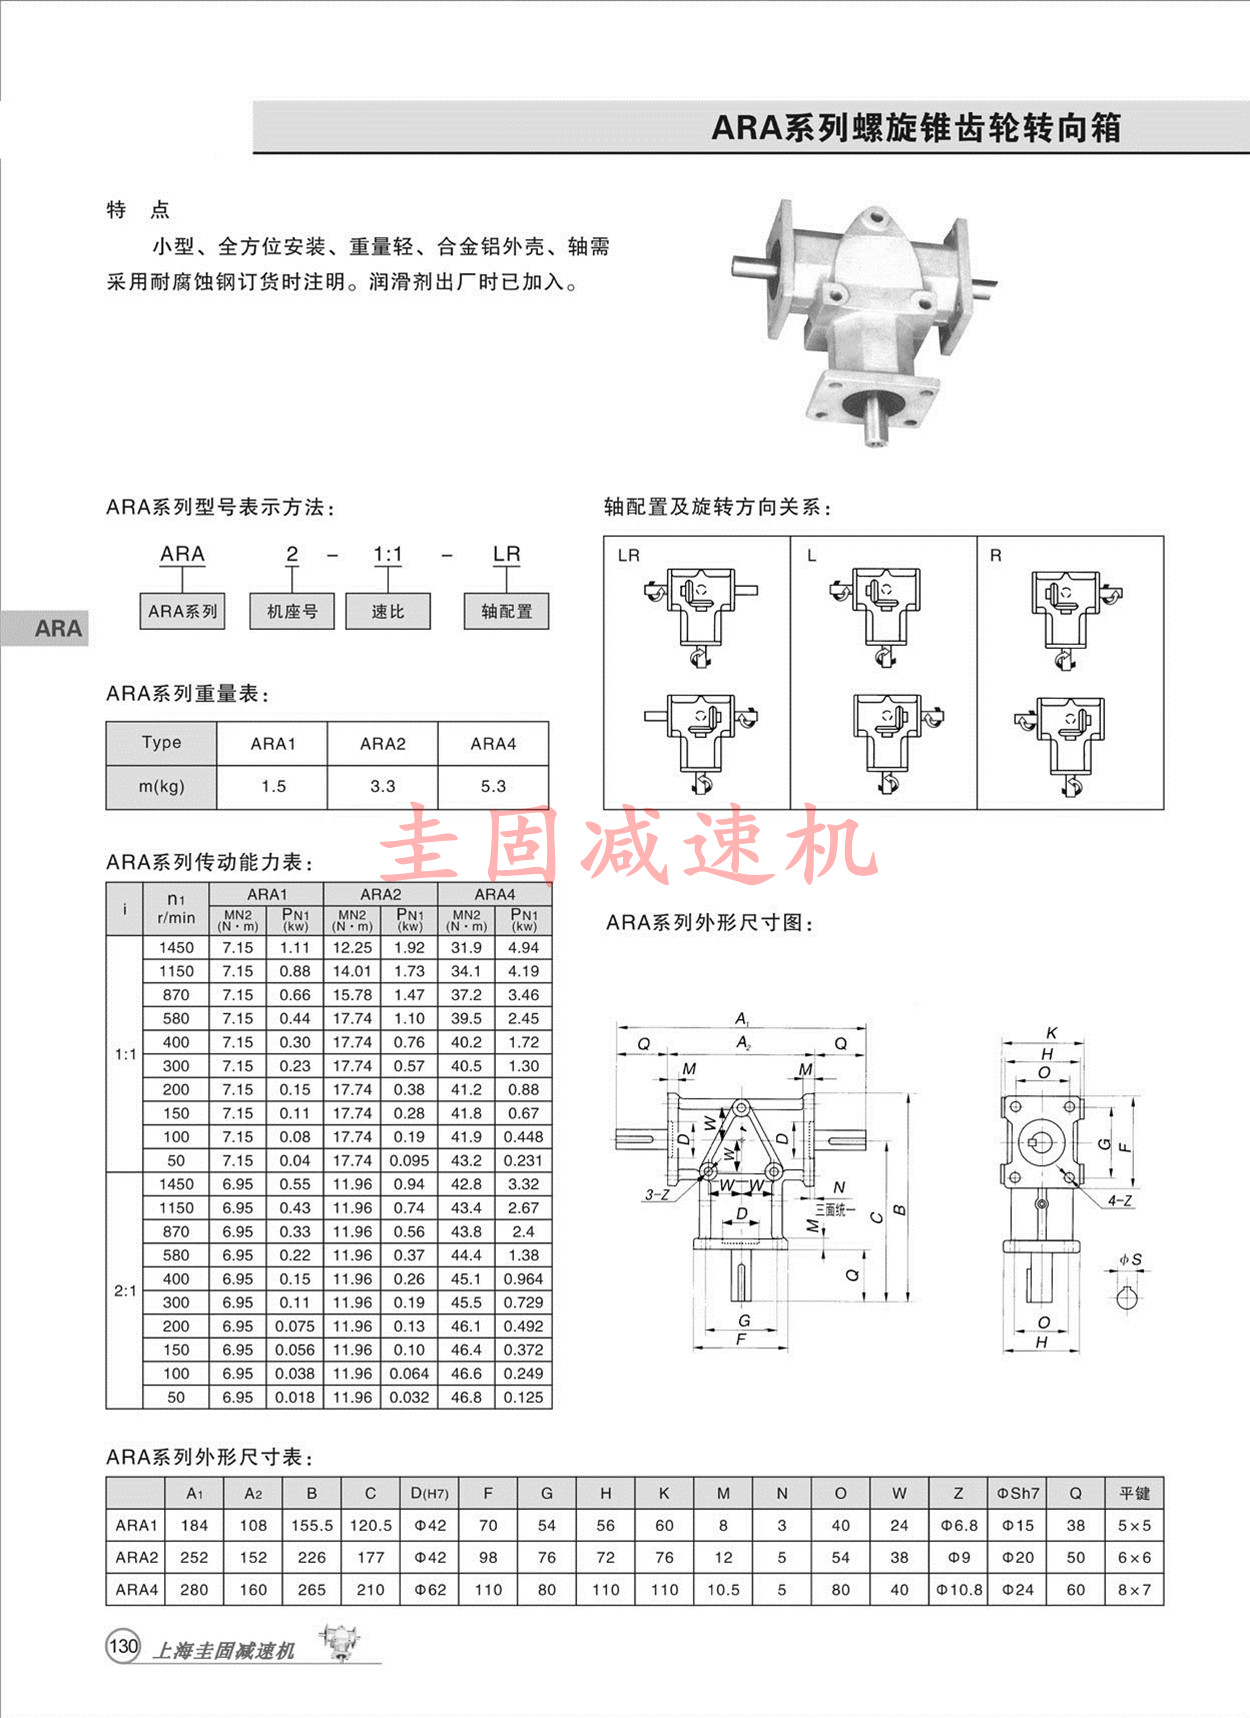 上海圭固ARA转向器、ARA换向器、ARA换向器3D模型，换向器现货供应 ARA换向器,ARA转向器,ARA1换向器,ARA2换向器,ARA4换向器